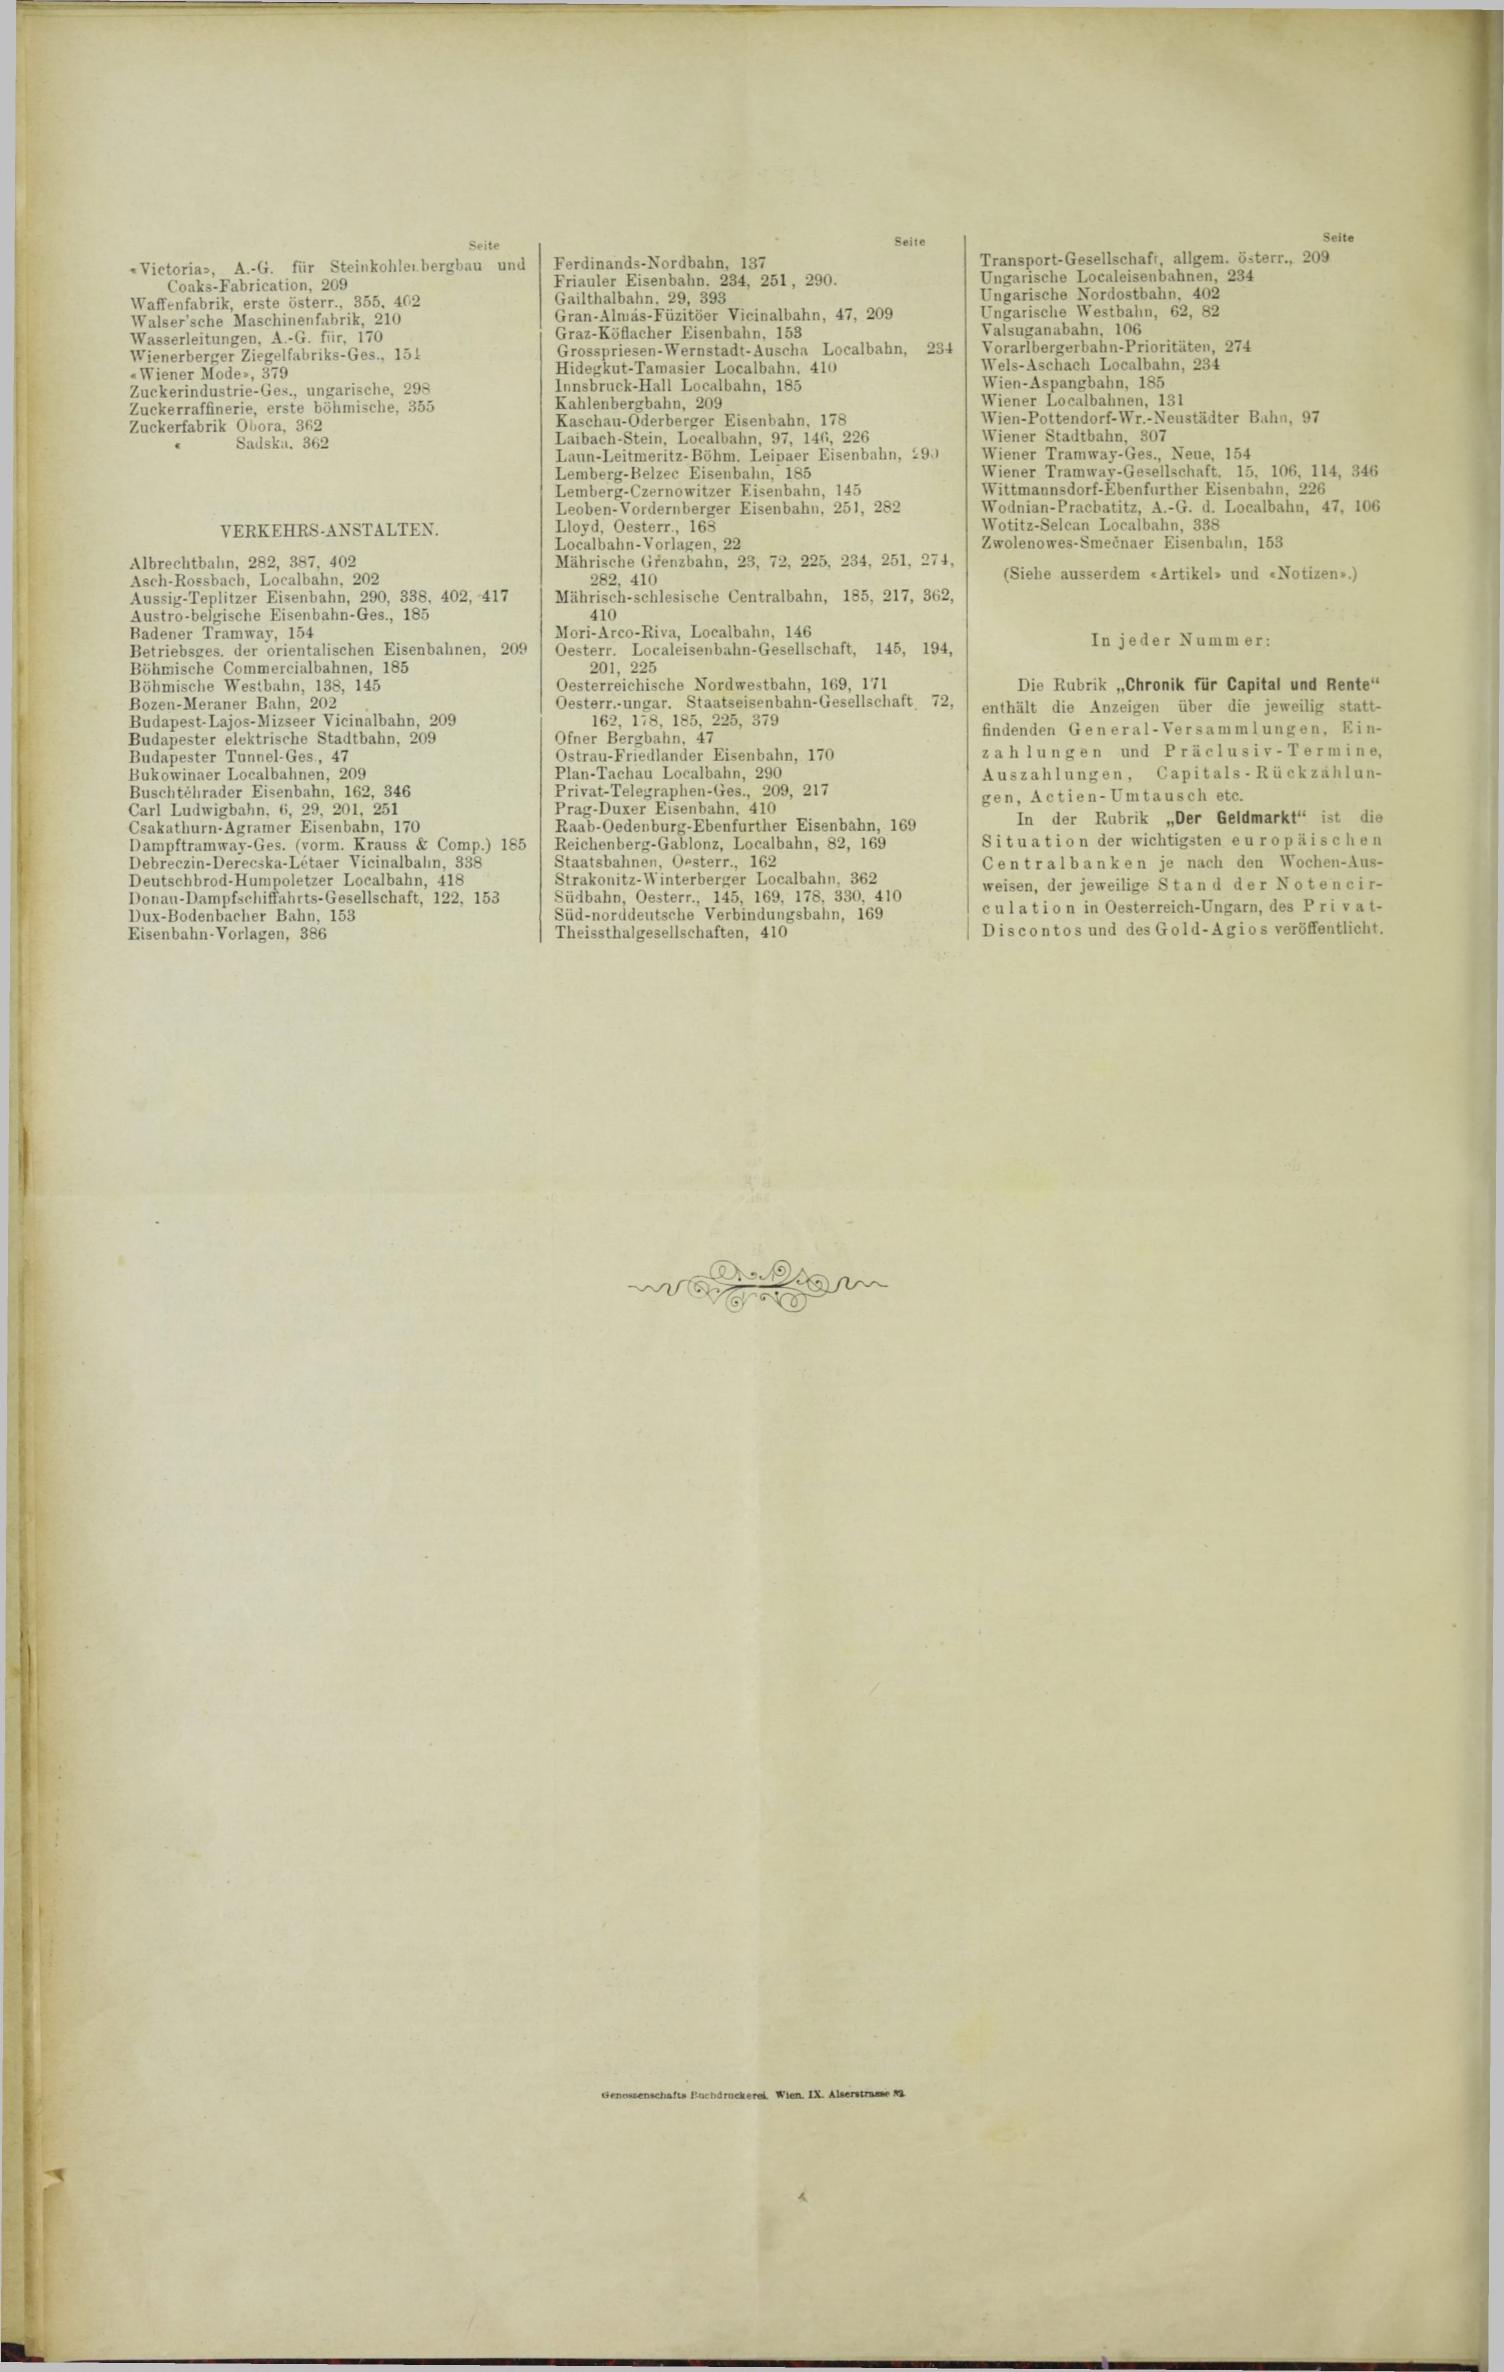 Der Tresor 22.06.1893 - Seite 12